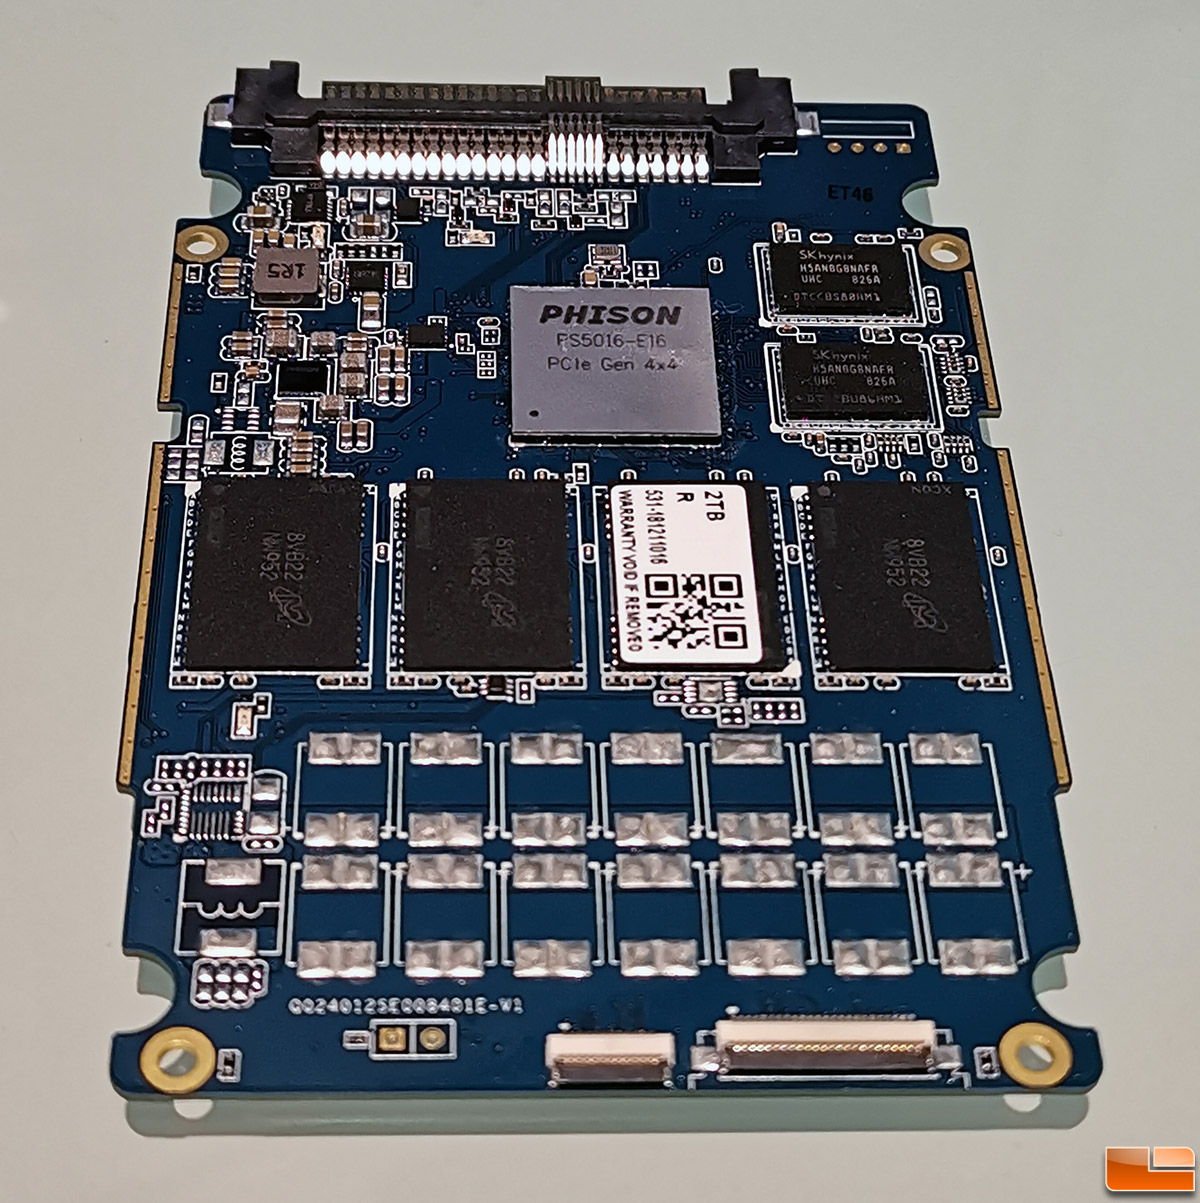 Corsair’ın yeni SSD’si PCIe 4.0 arayüzü sayesinde, 4.95 GB/sn okuma hızı sunuyor